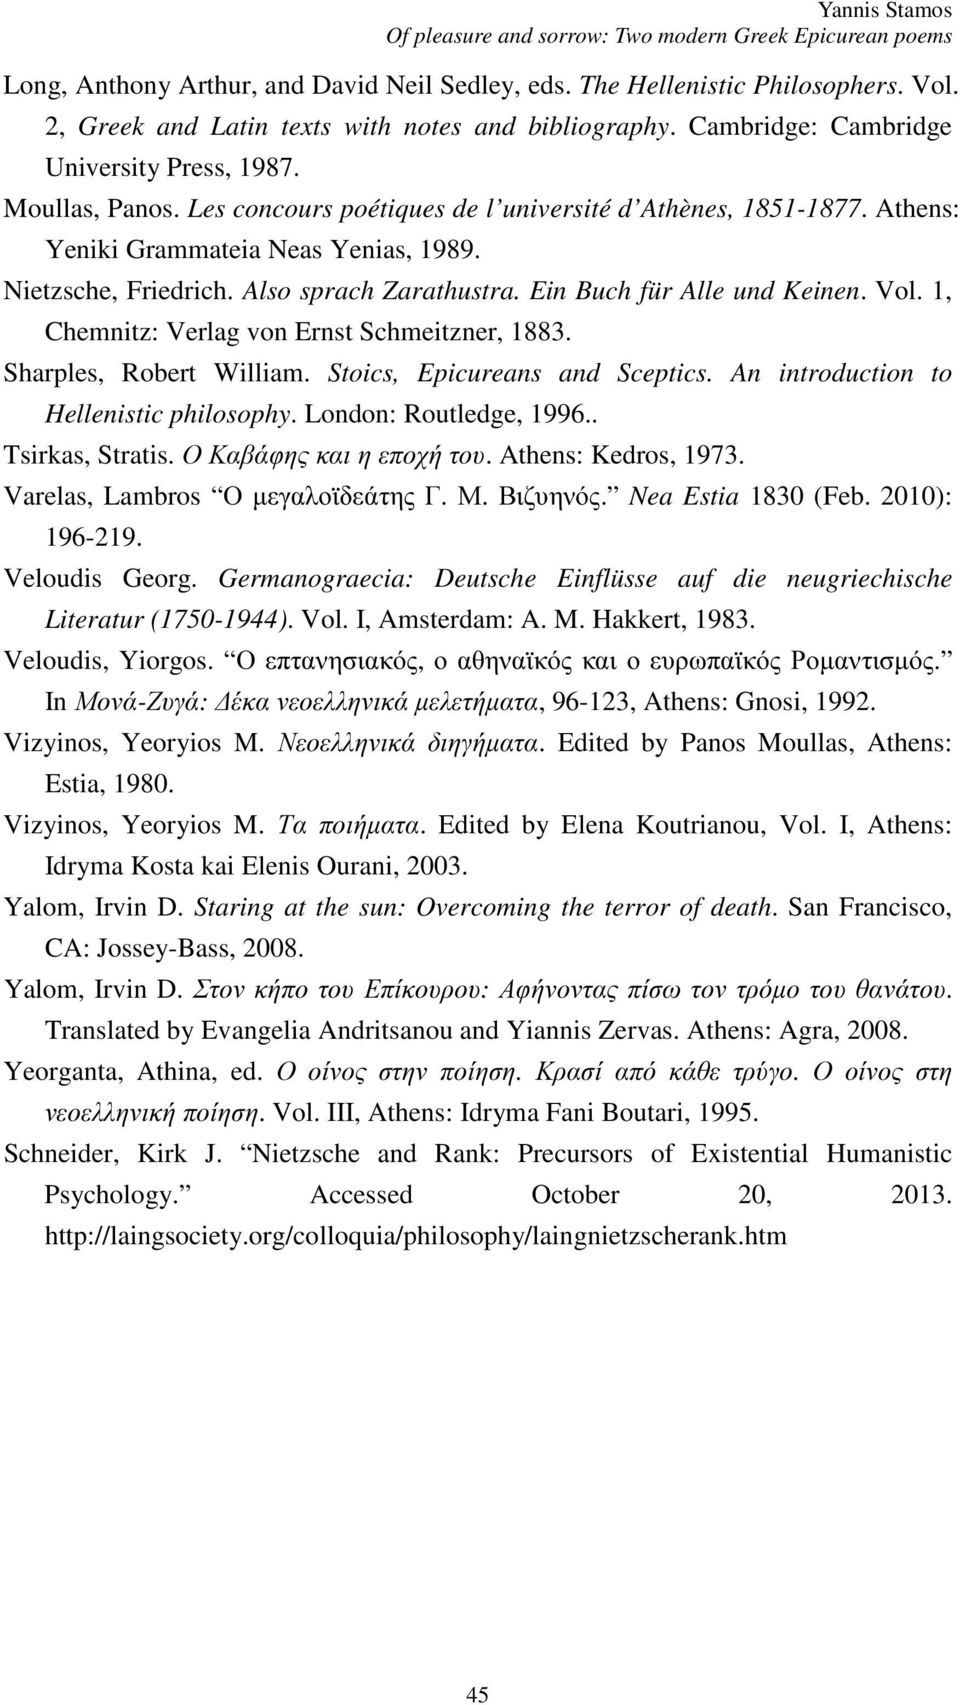 Athens: Yeniki Grammateia Neas Yenias, 1989. Nietzsche, Friedrich. Also sprach Zarathustra. Ein Buch für Alle und Keinen. Vol. 1, Chemnitz: Verlag von Ernst Schmeitzner, 1883.